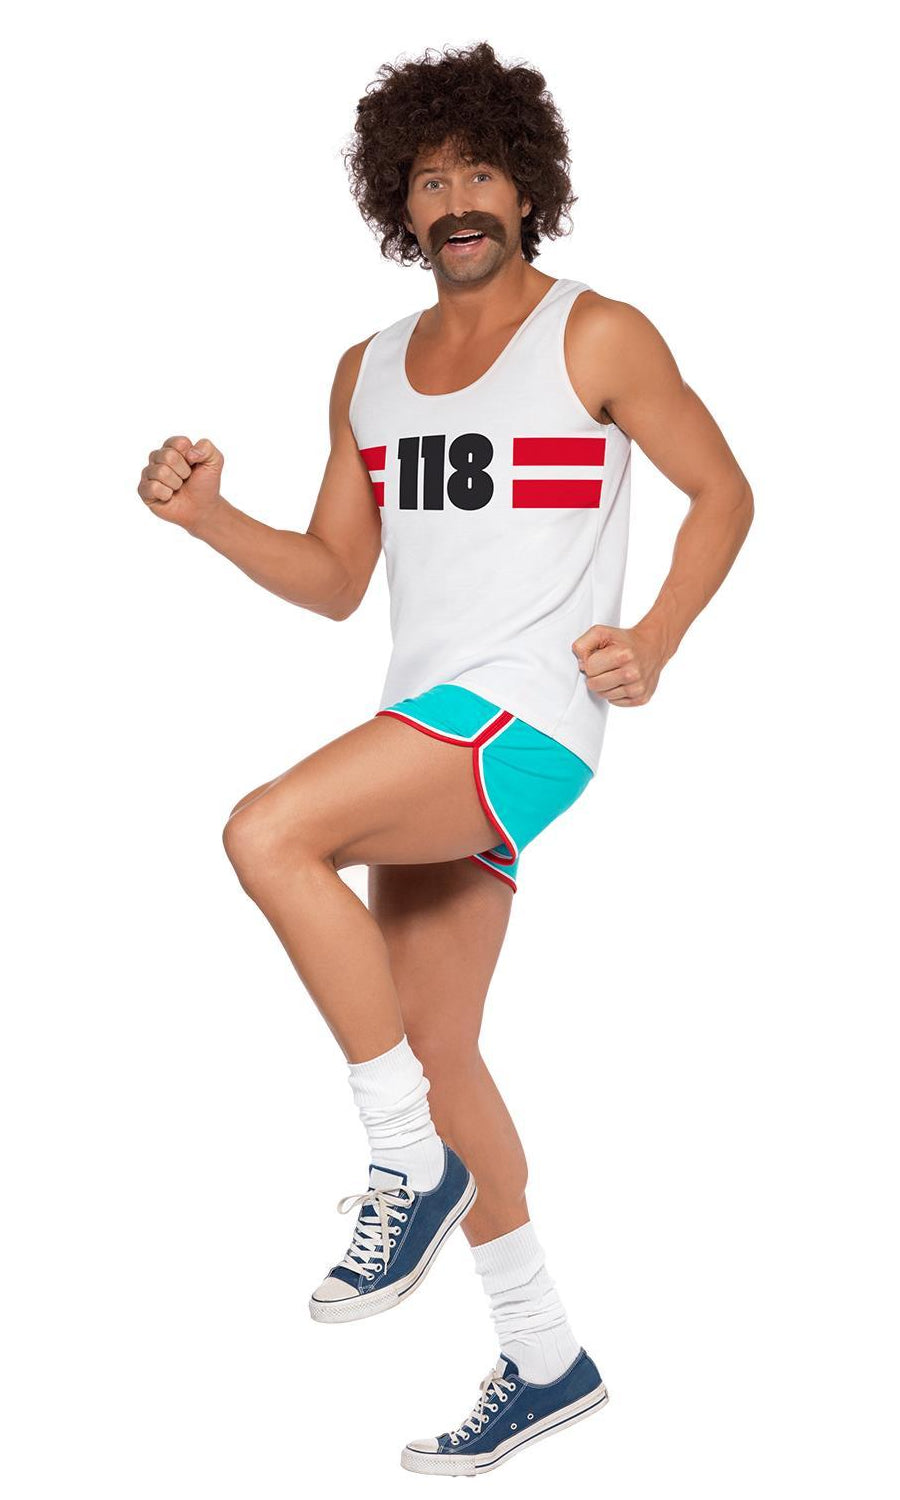 White 118 runner singlet and blue shorts